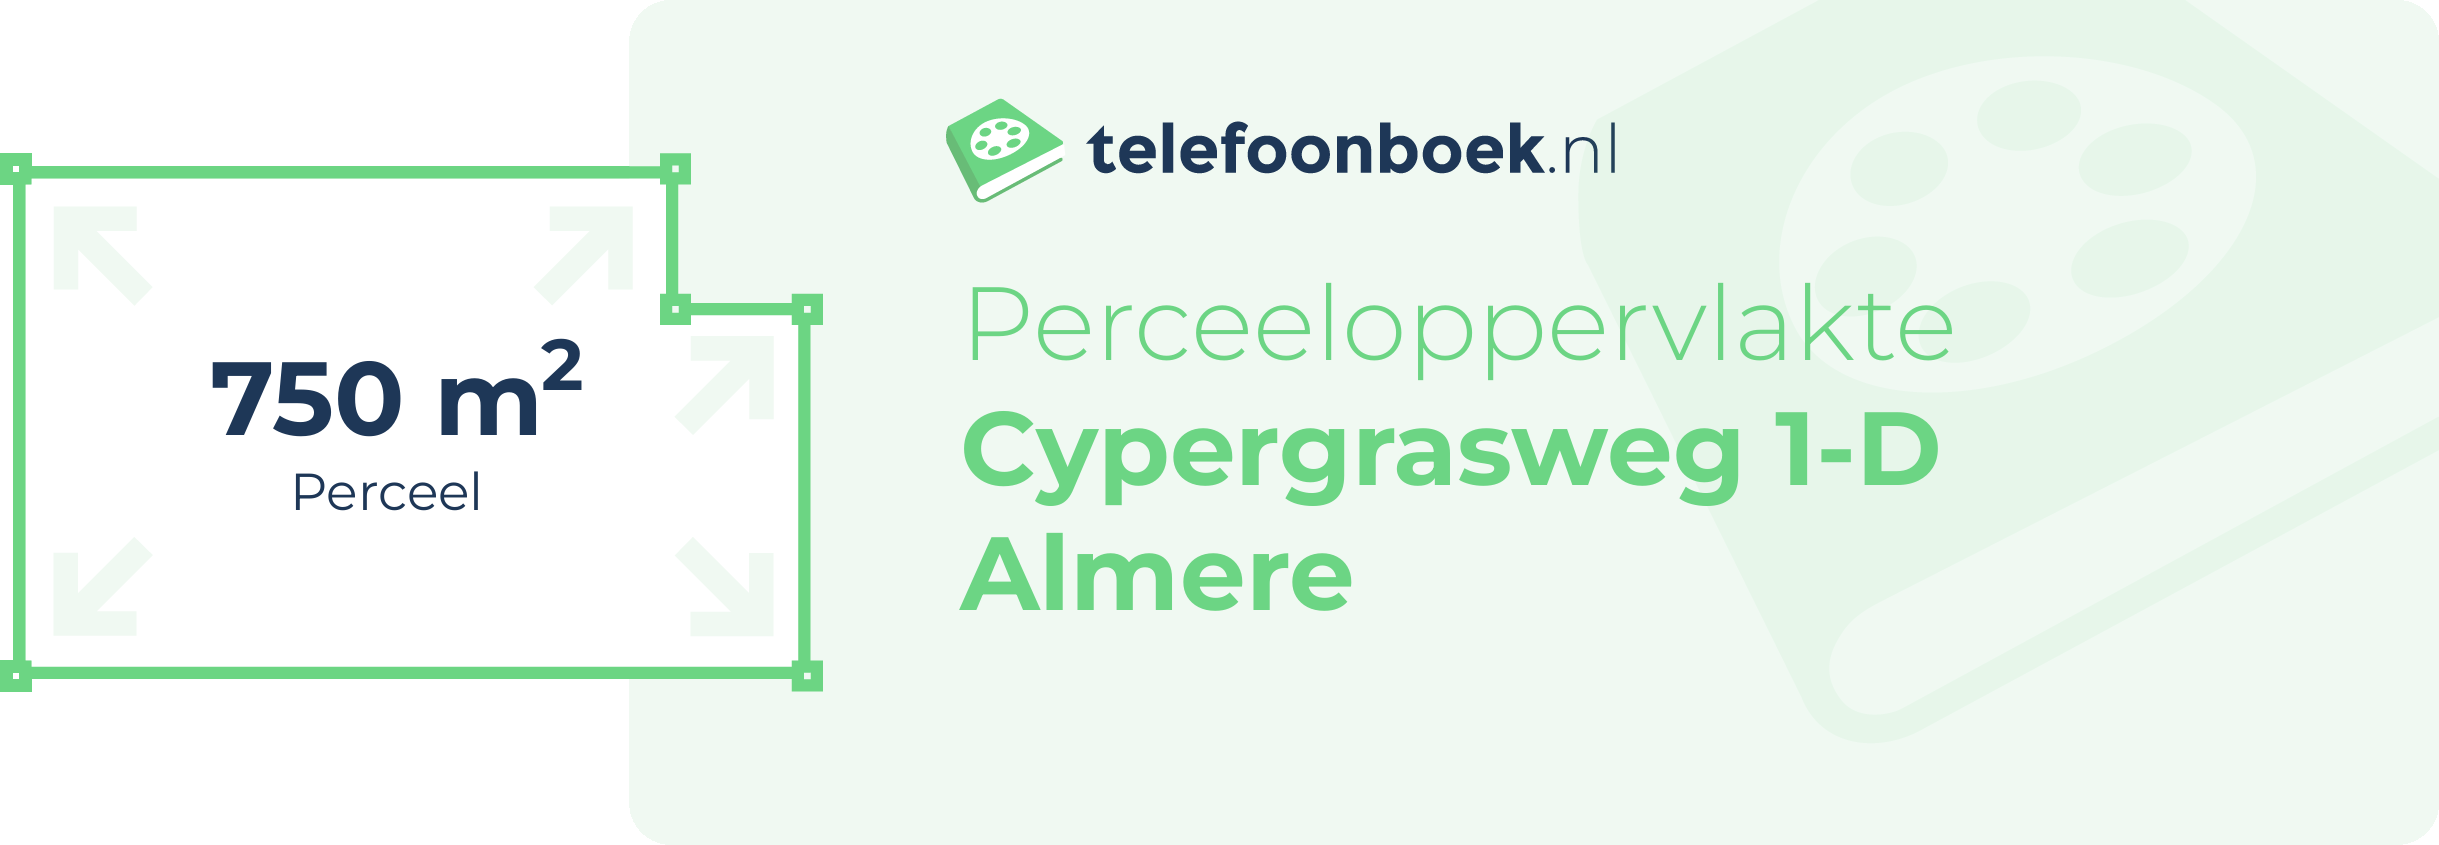 Perceeloppervlakte Cypergrasweg 1-D Almere